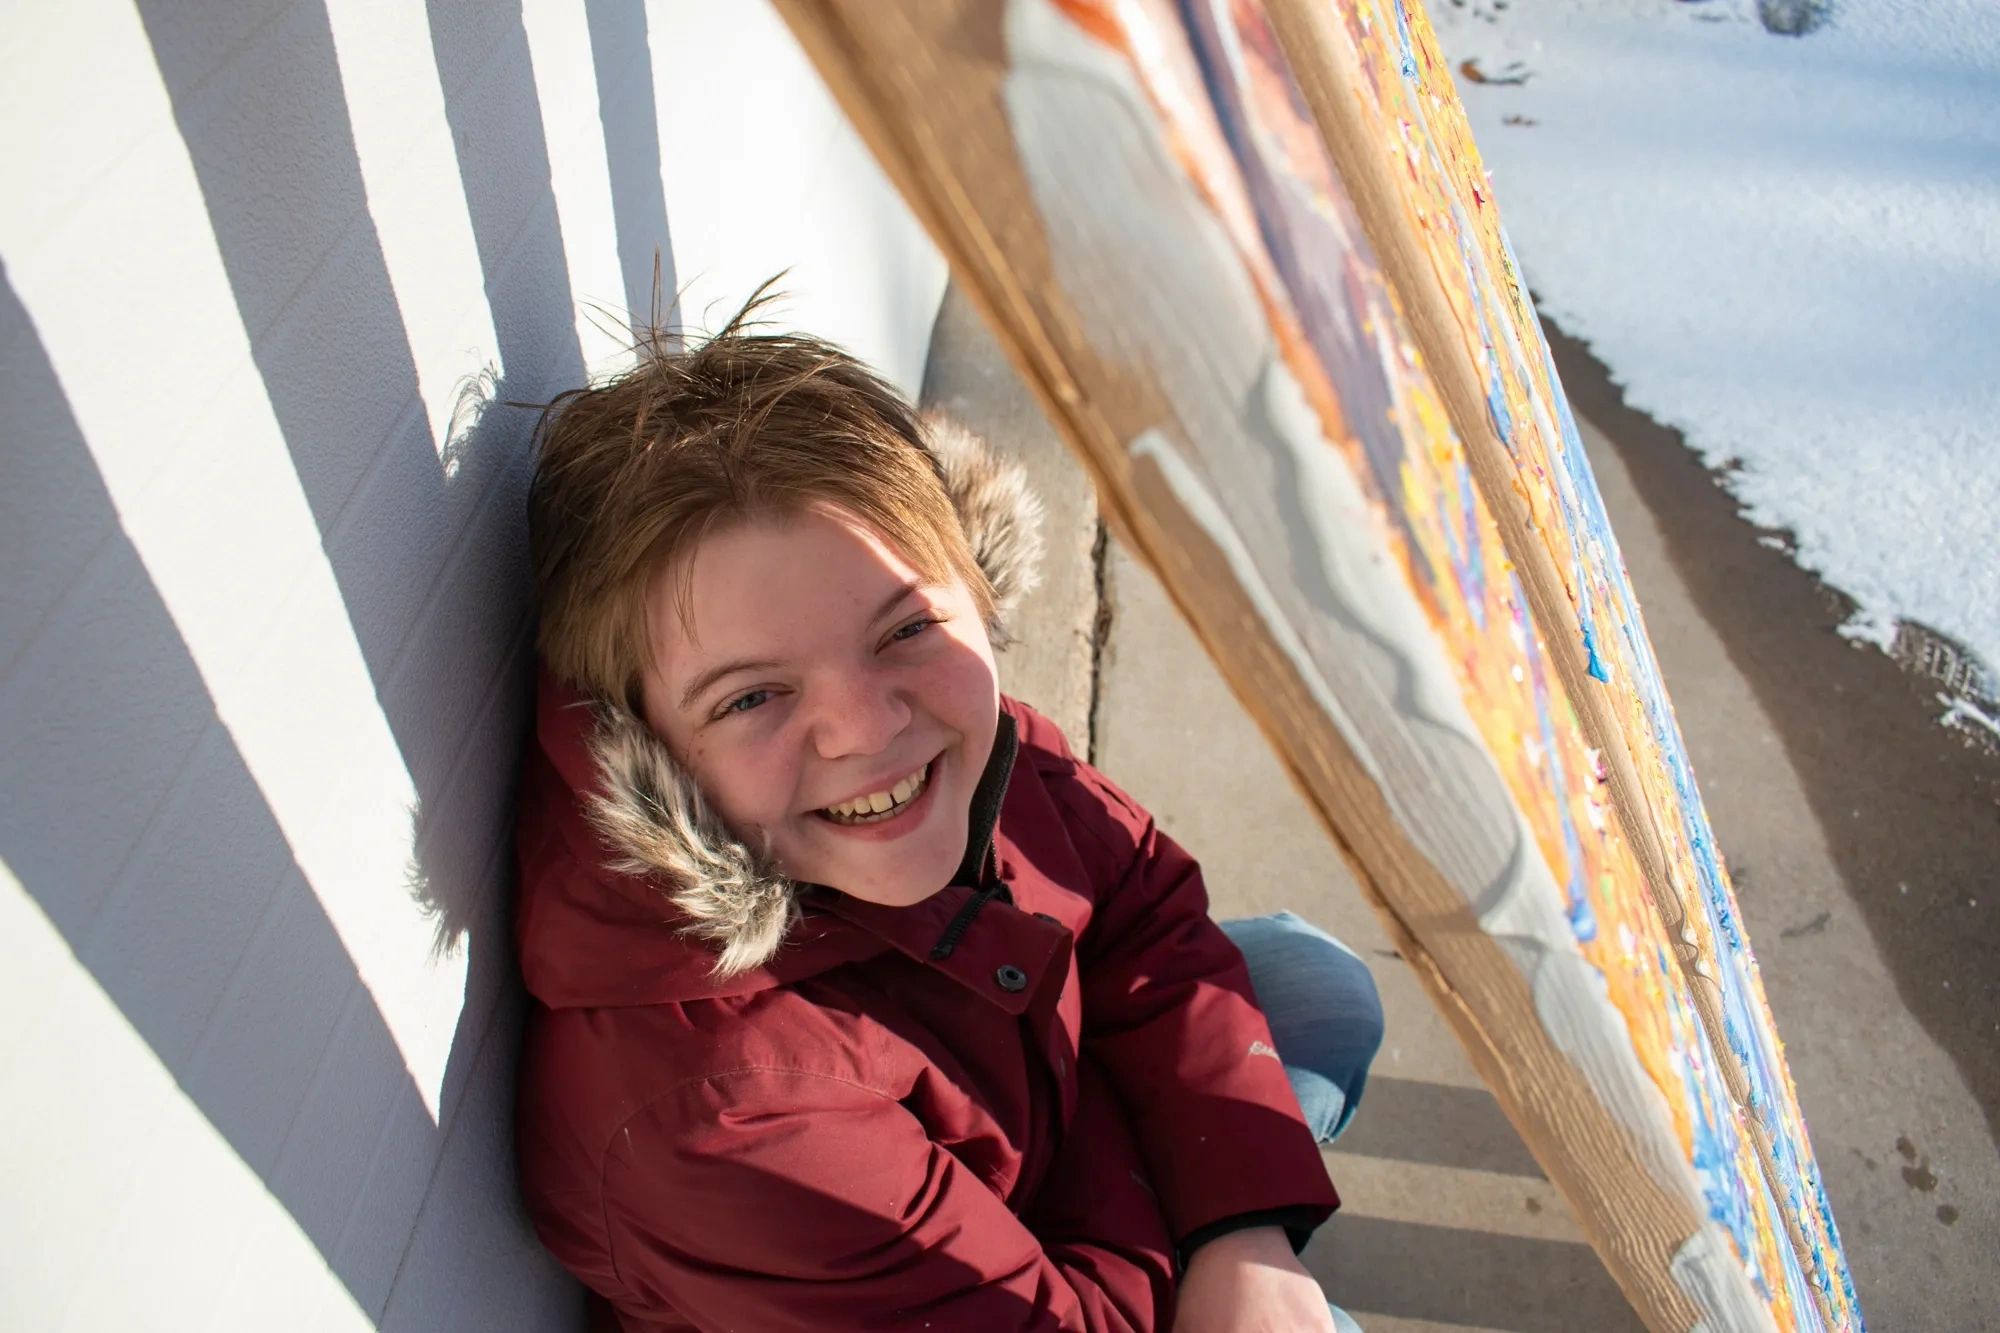 Self-portrait of artist Rachel Albee taken outside behind wooden bars.